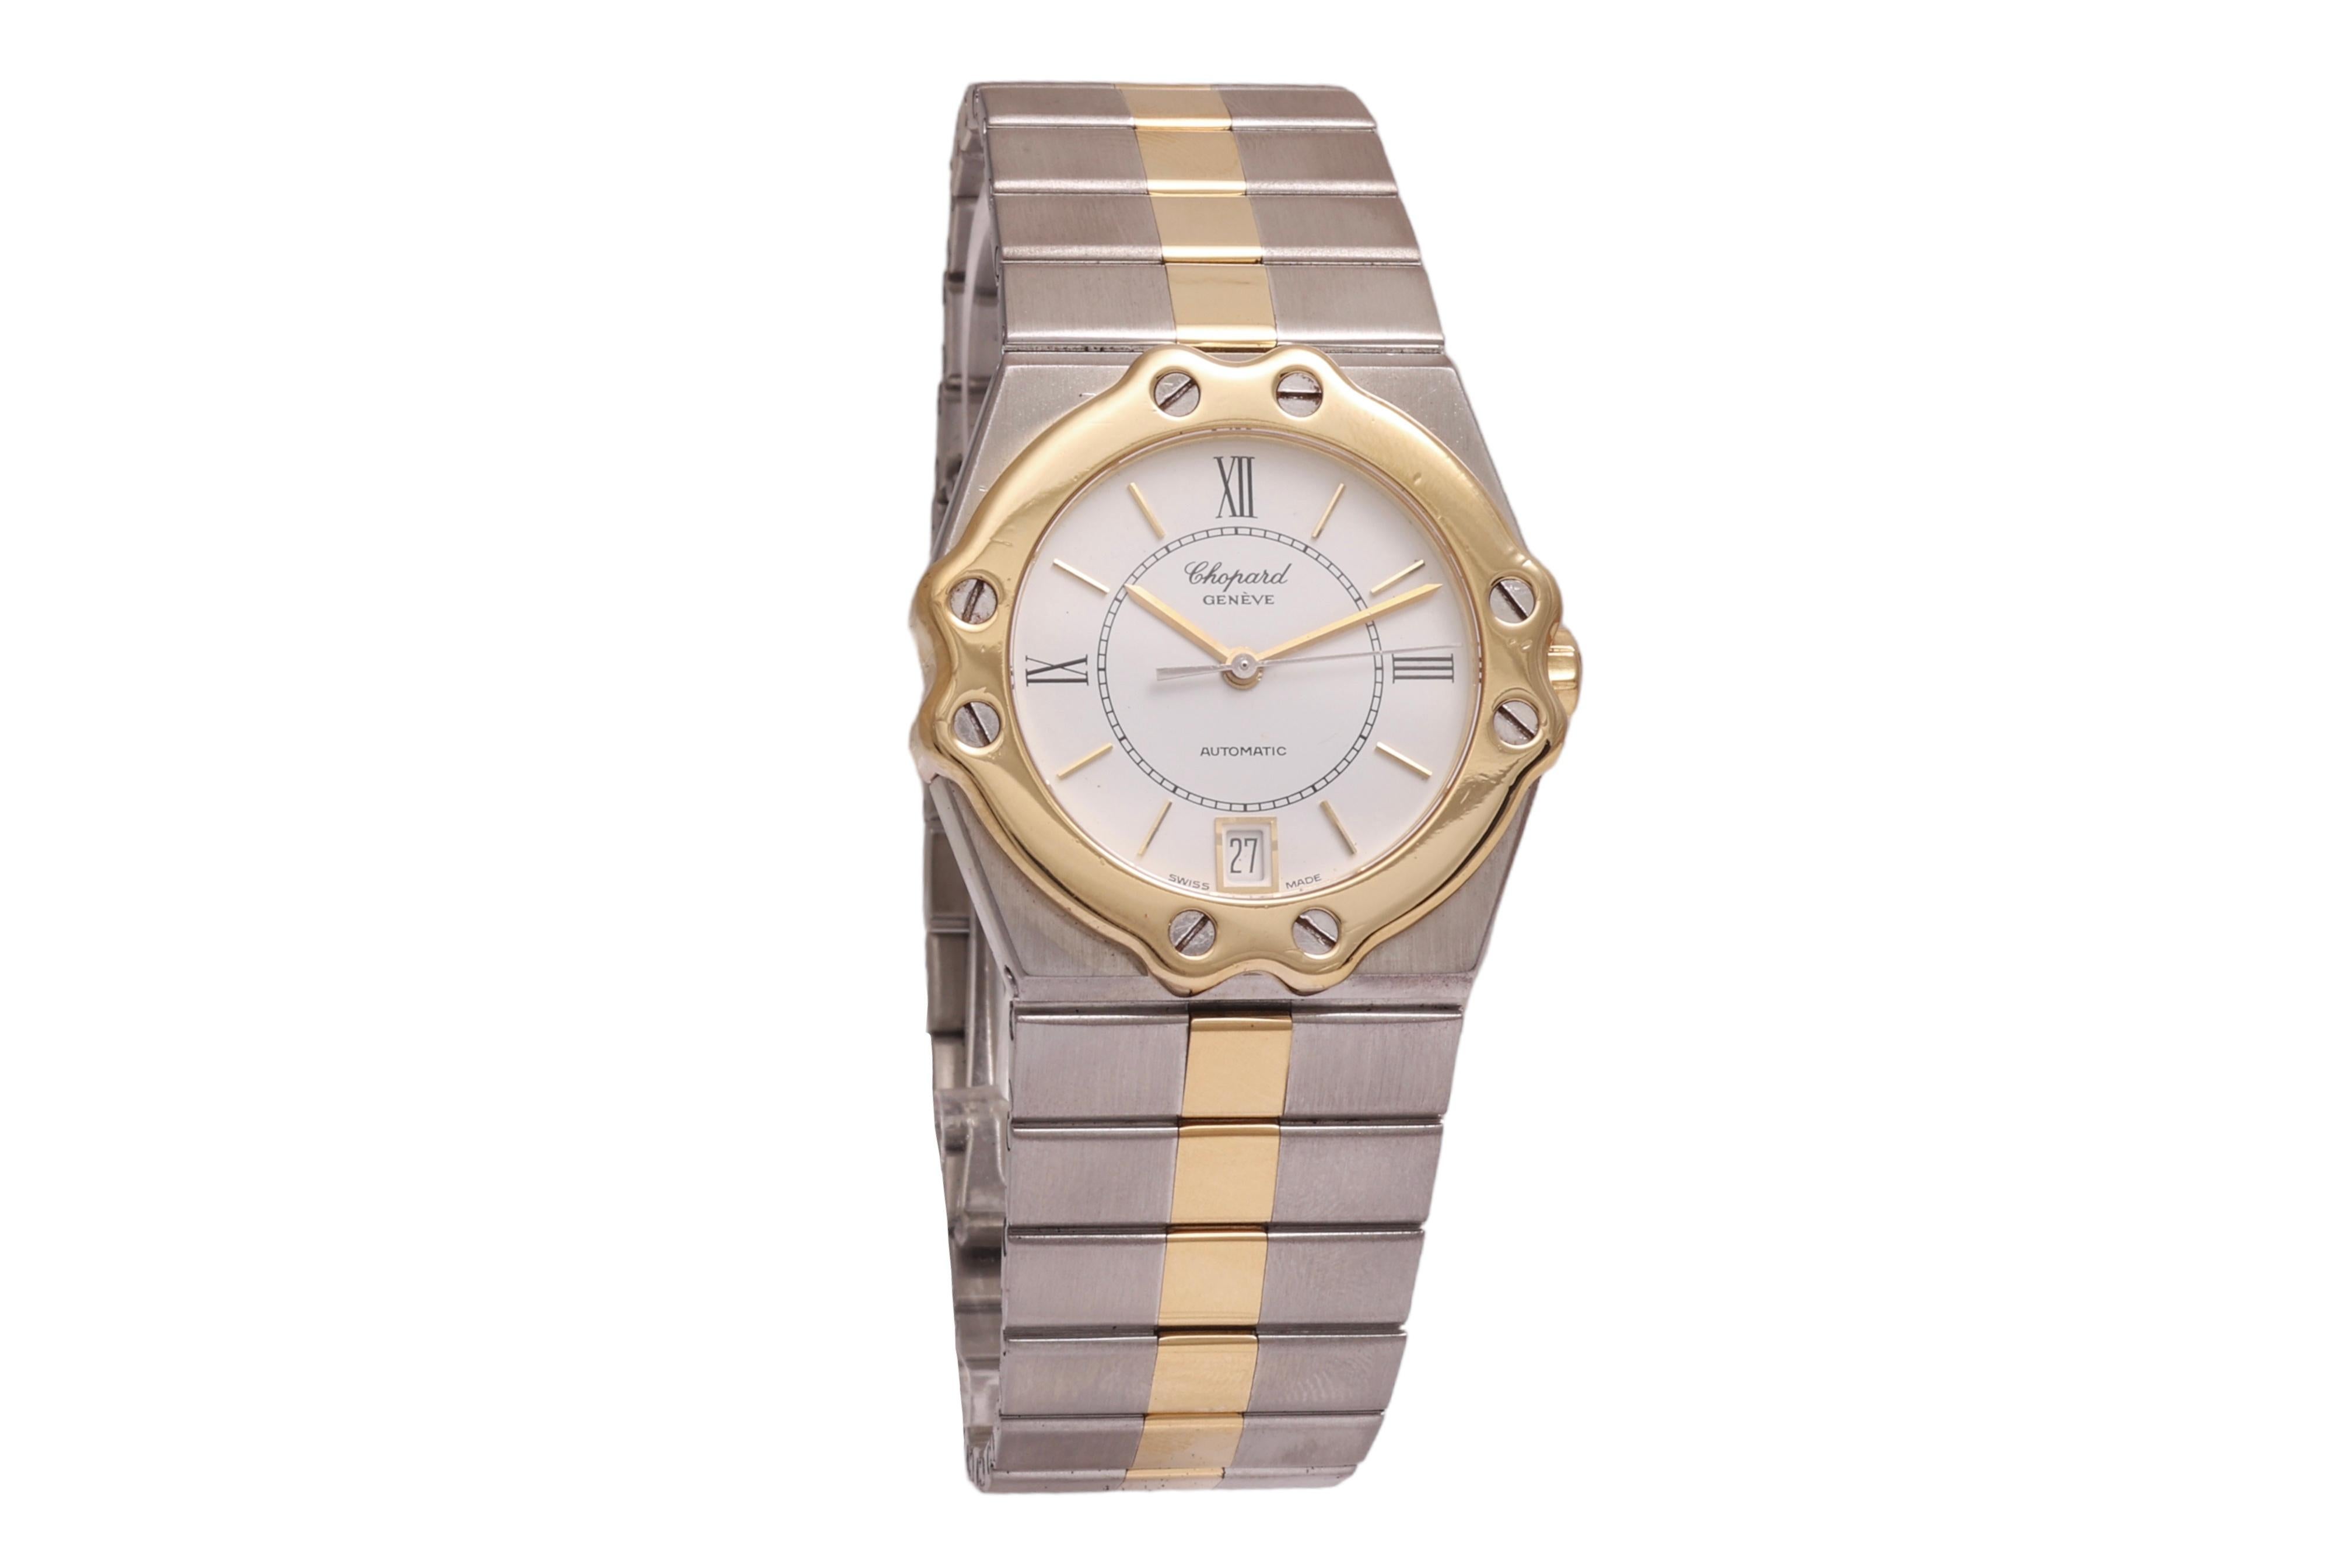 18 Kt Gold & Stahl Chopard St Moritz Automatik-Armbanduhr mit Chopard Box

Zifferblatt : Weiß
Uhrwerk : Mechanisch mit automatischem Aufzug
Gehäuse & Armband : 18 KT Gold & Edelstahl